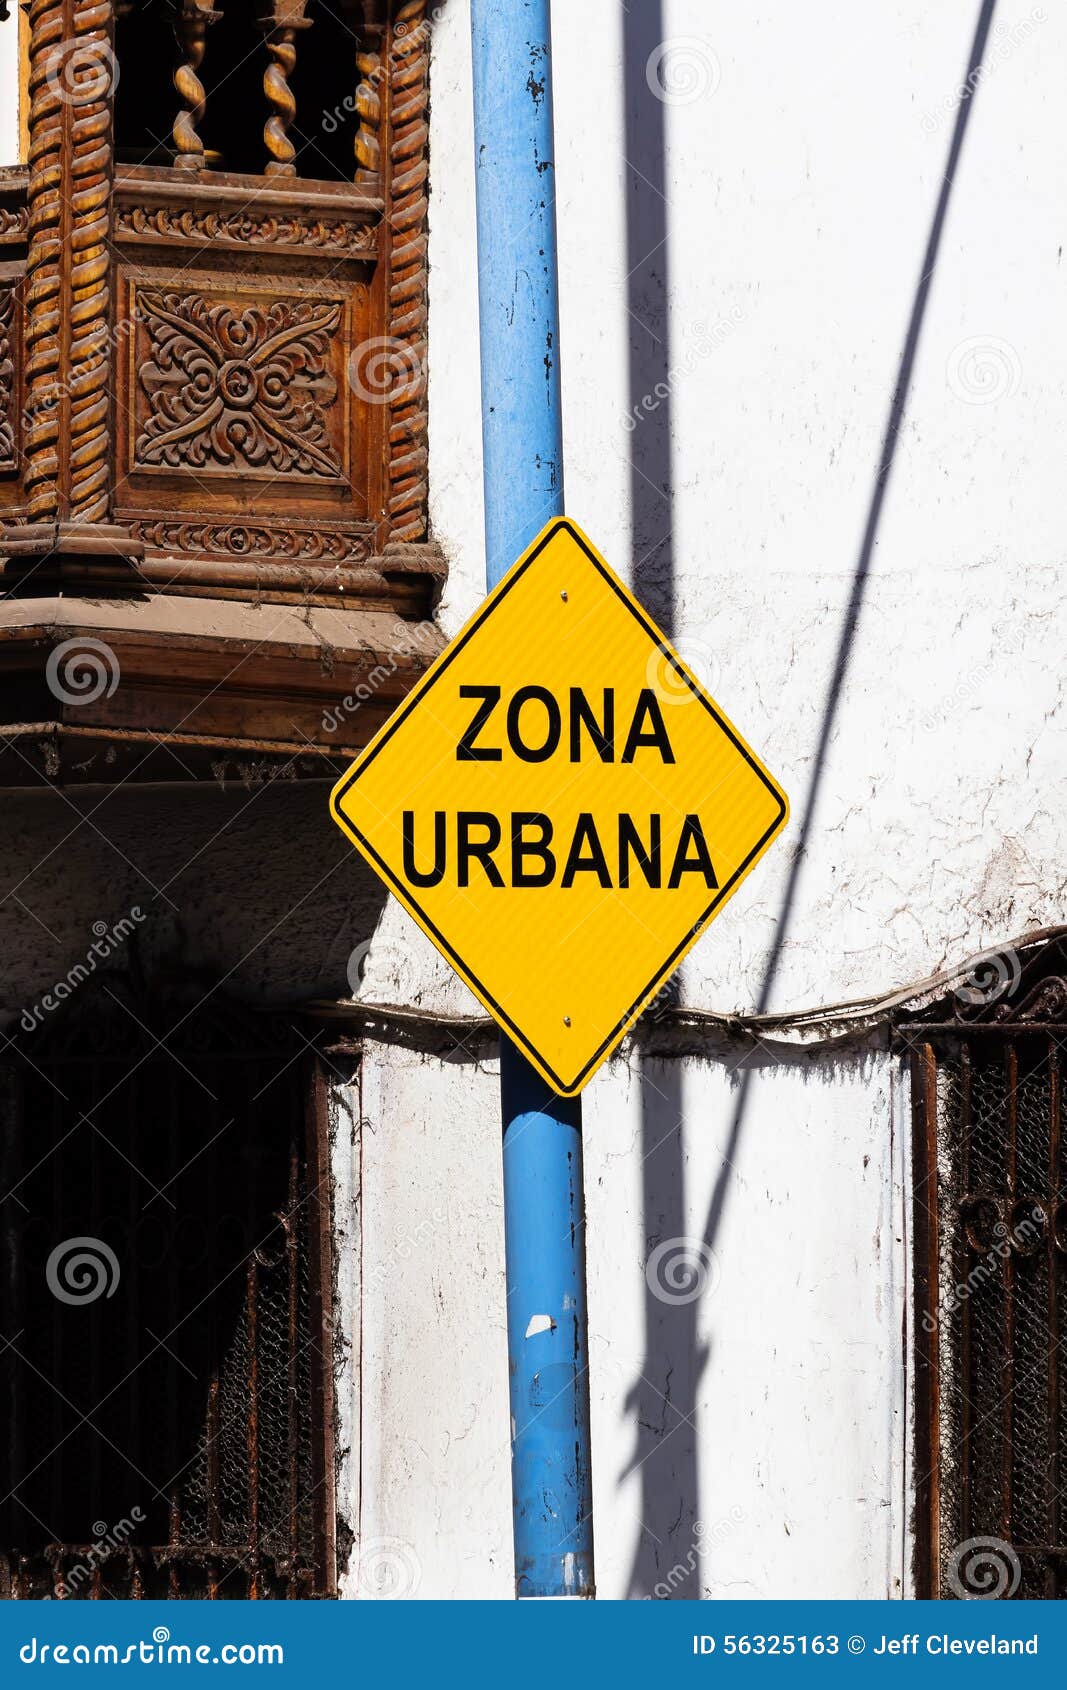 urban zone sign (zona urbana) cusco peru south america